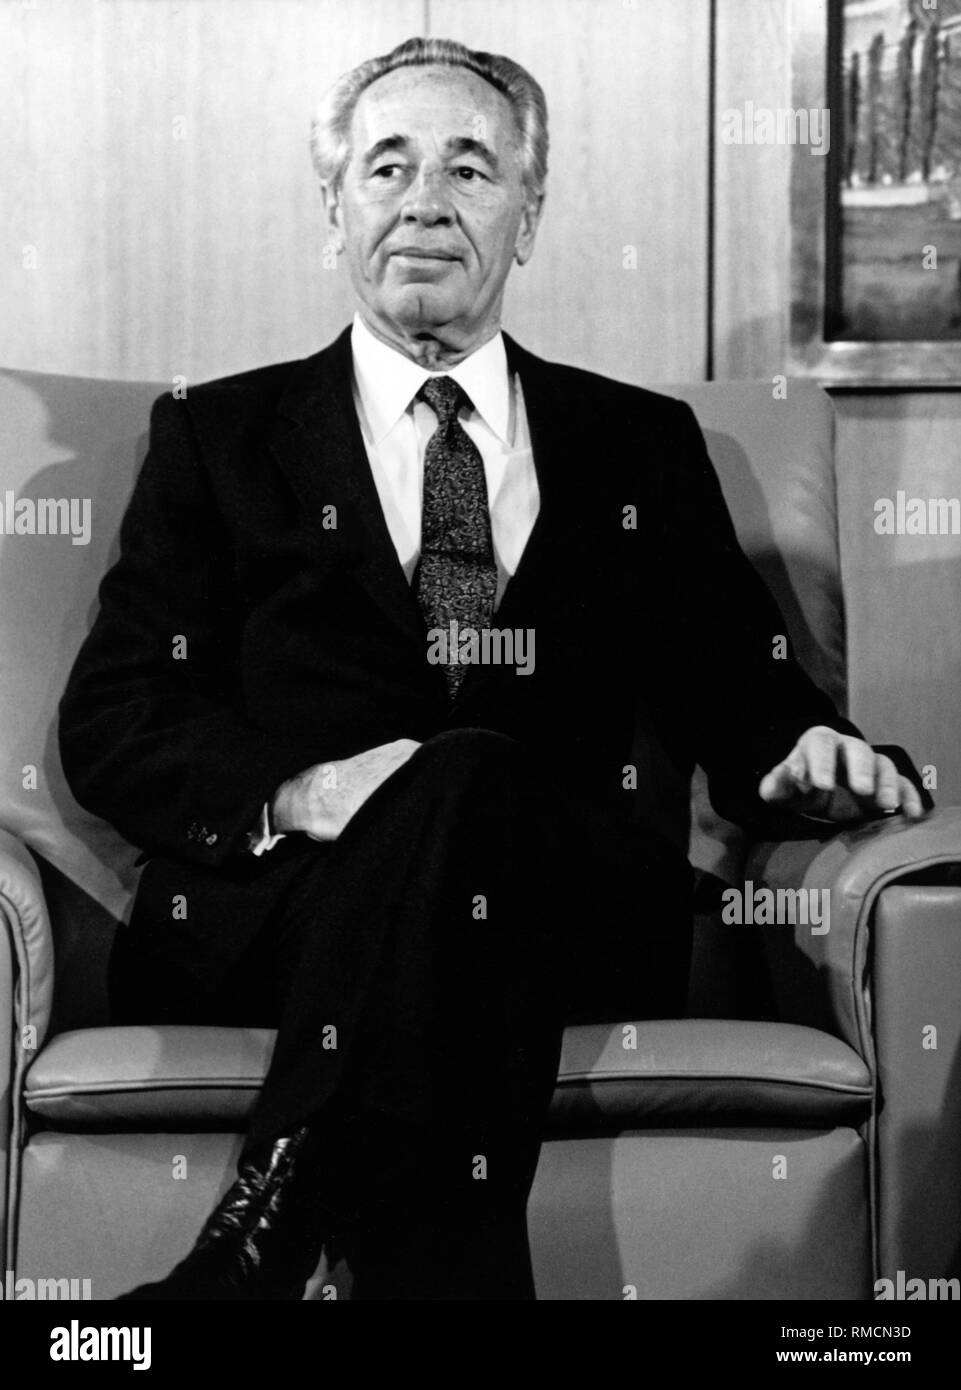 Shimon Peres als Premierminister von Israel. Peres hielt diese Position von 1984 bis 1986 und erneut von 1995 bis 1996. Stockfoto